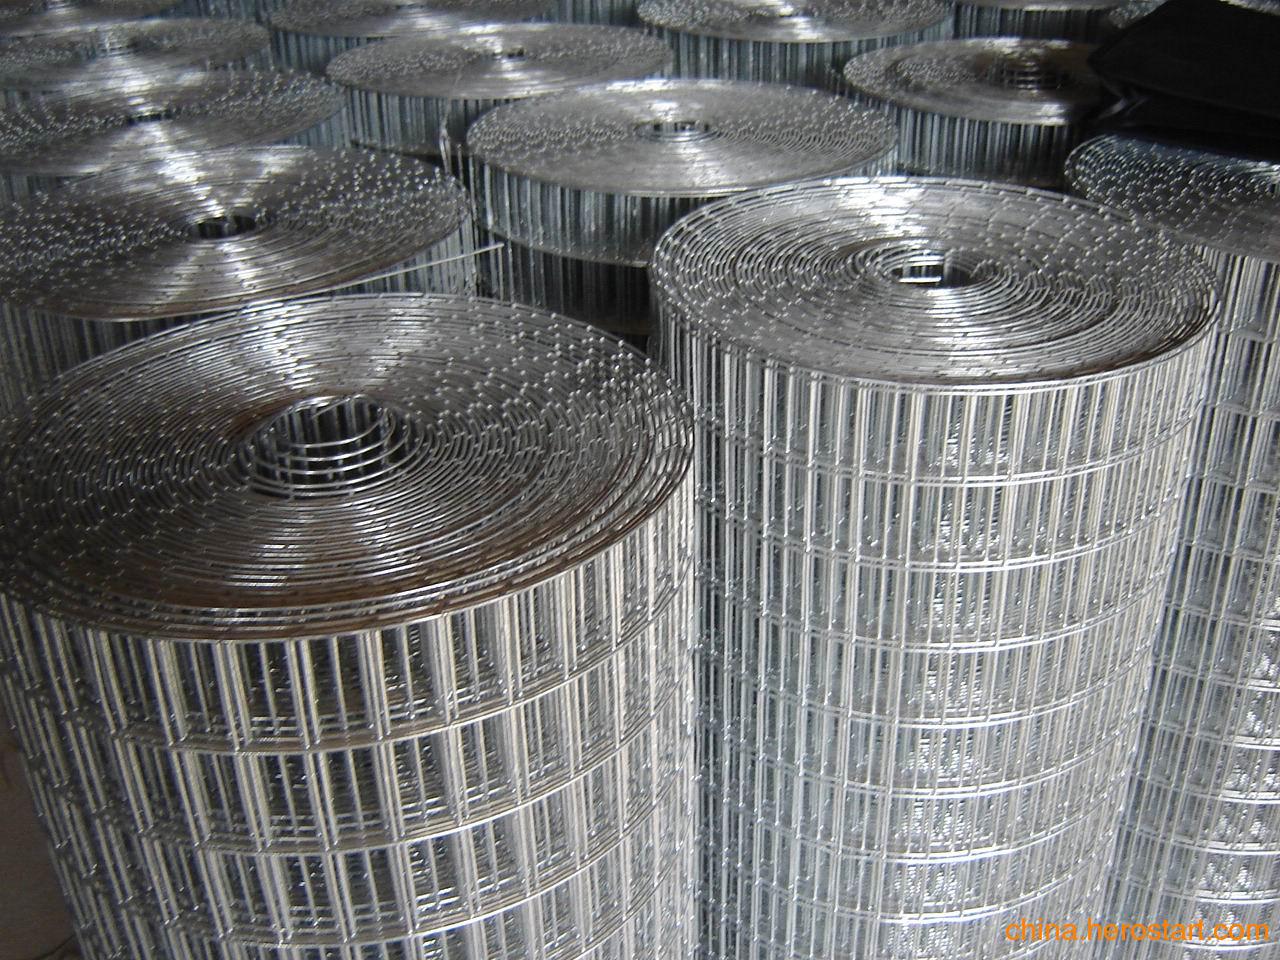 河北电焊网厂家 不锈钢电焊网 镀锌电焊网 建筑网厂